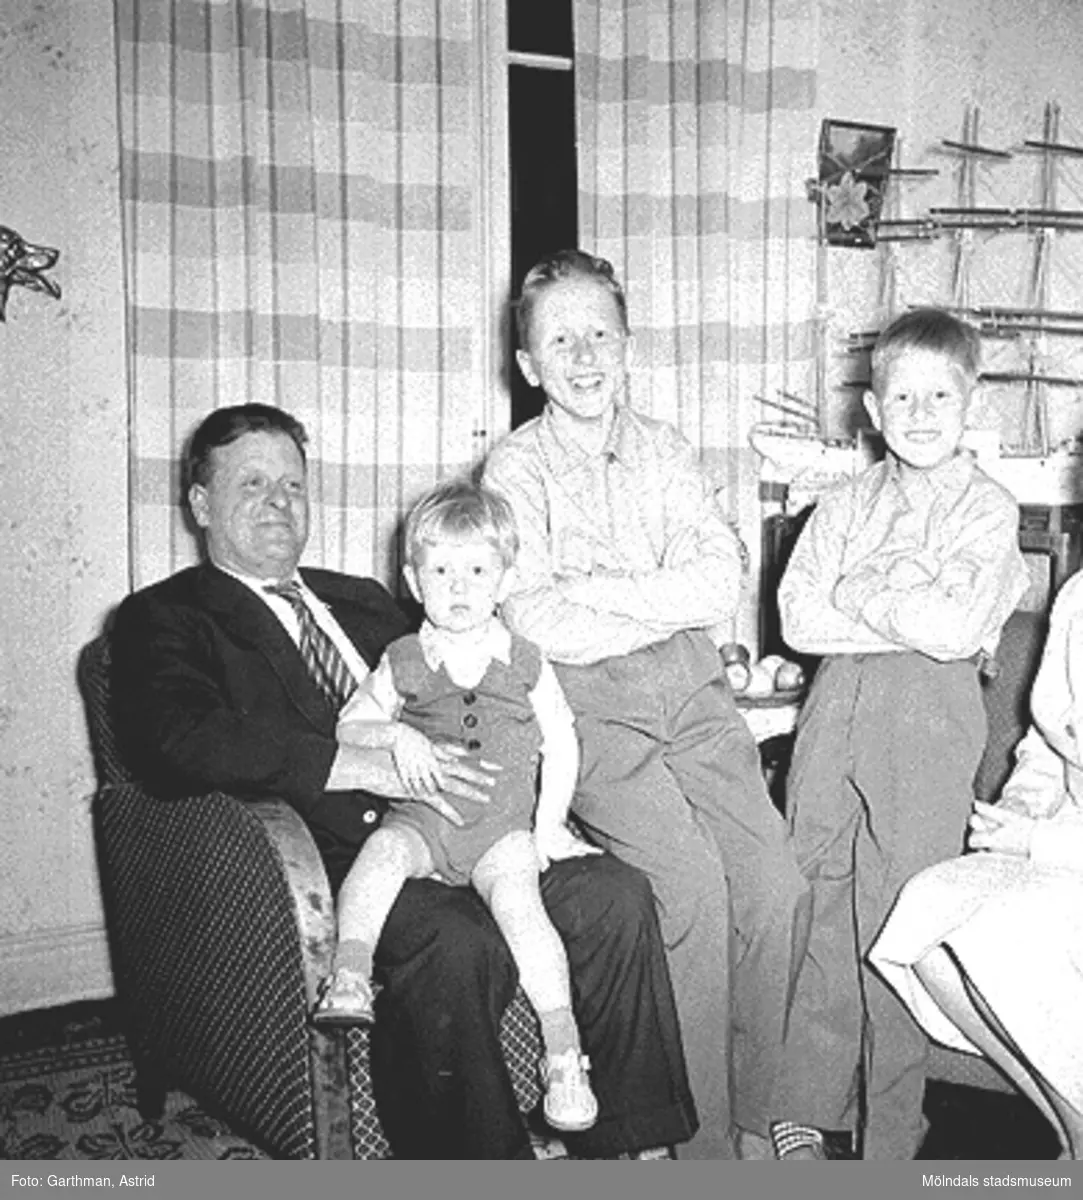 Hemma hos familjen Garthman. Från vänster; pappa Helmer med Jerry i knät, Leif-Åke, Alf och mamma Astrid. Familjen bodde på Barnhemsgatan 21, 1 rum och kök med kammare, år 1958.